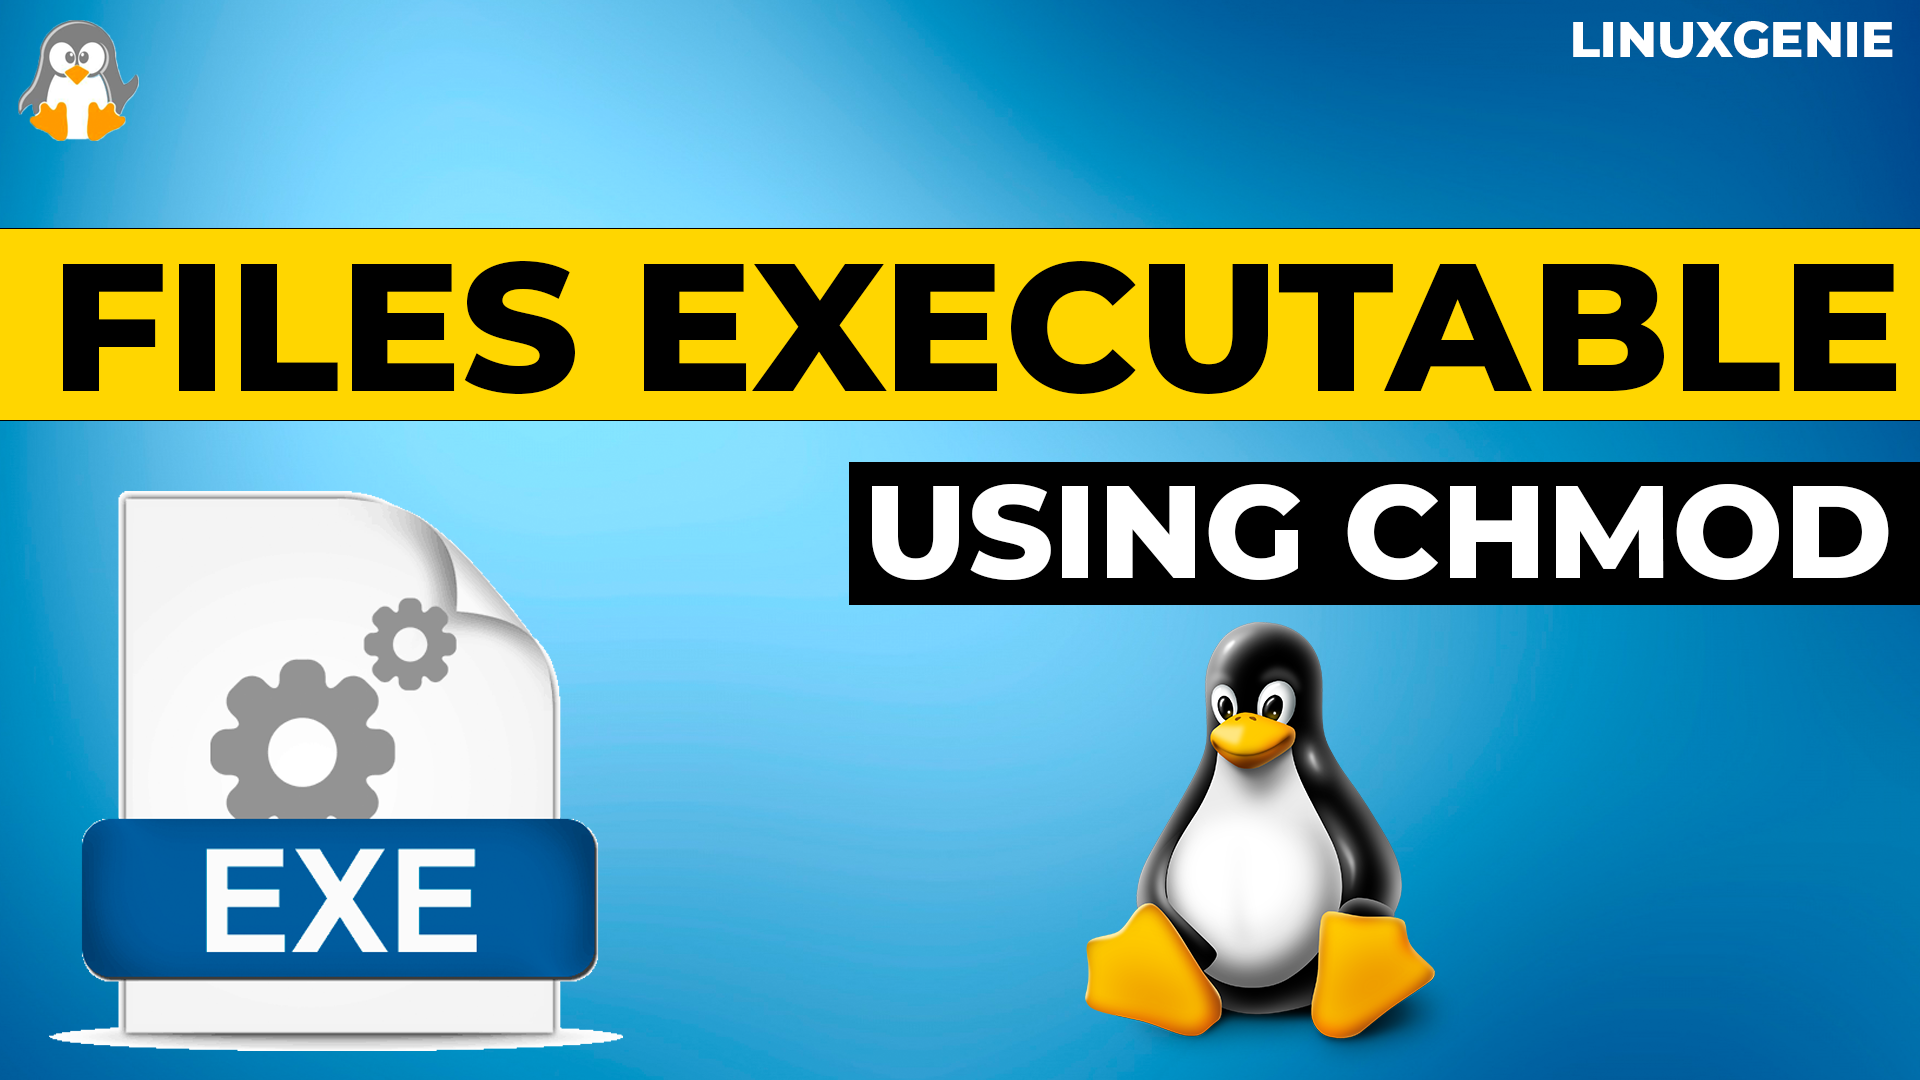 How to Make Files Executable Using Chmod in Ubuntu 22.04?